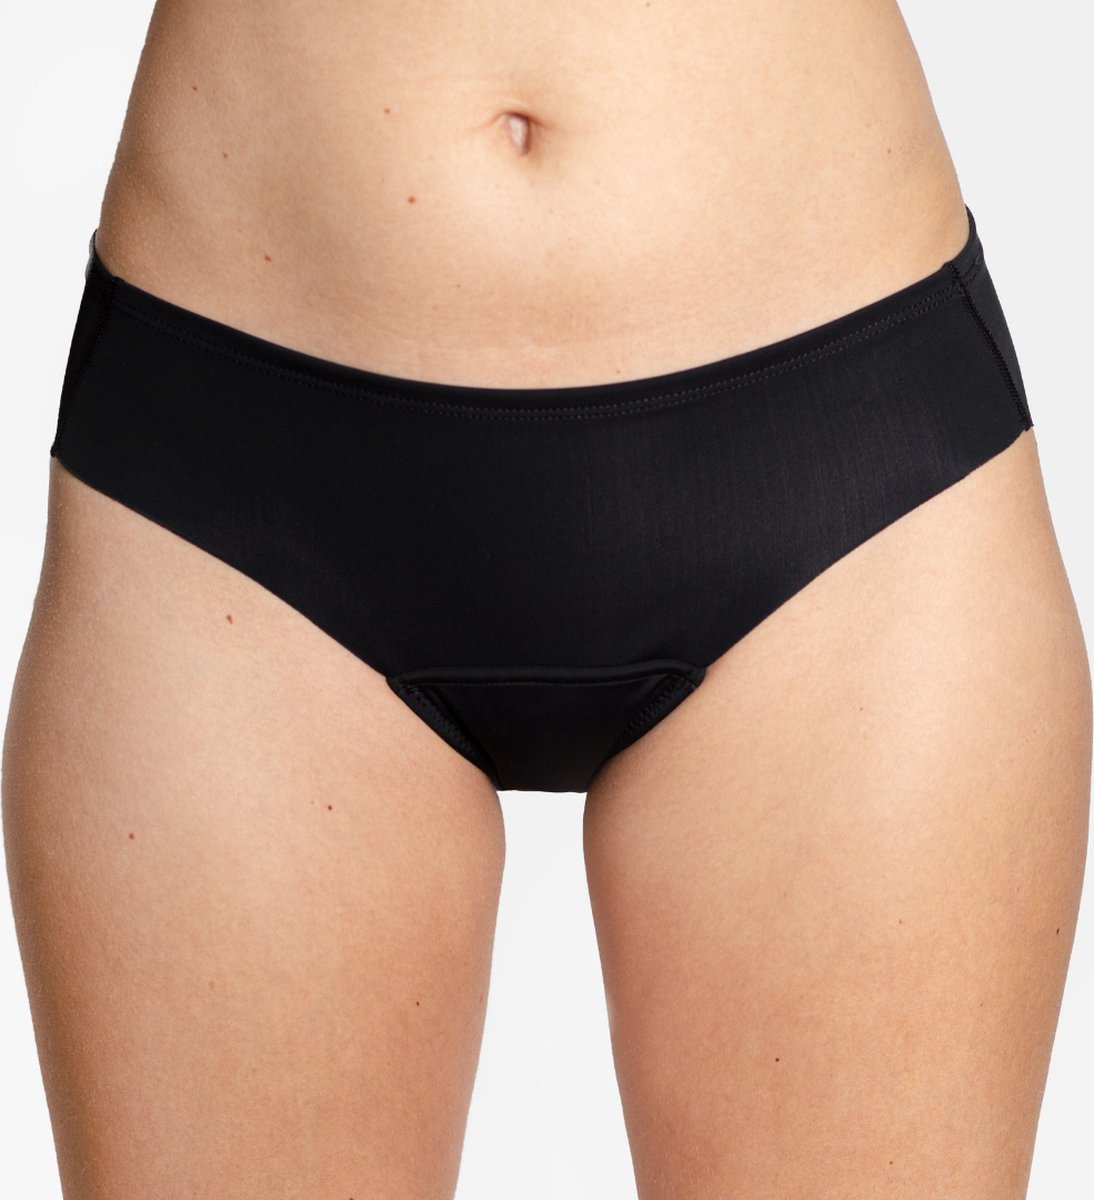 Naadloos menstruatieondergoed - incontinentieondergoed - sportlijn - naadloos - absorberende slip - zwart - maat s